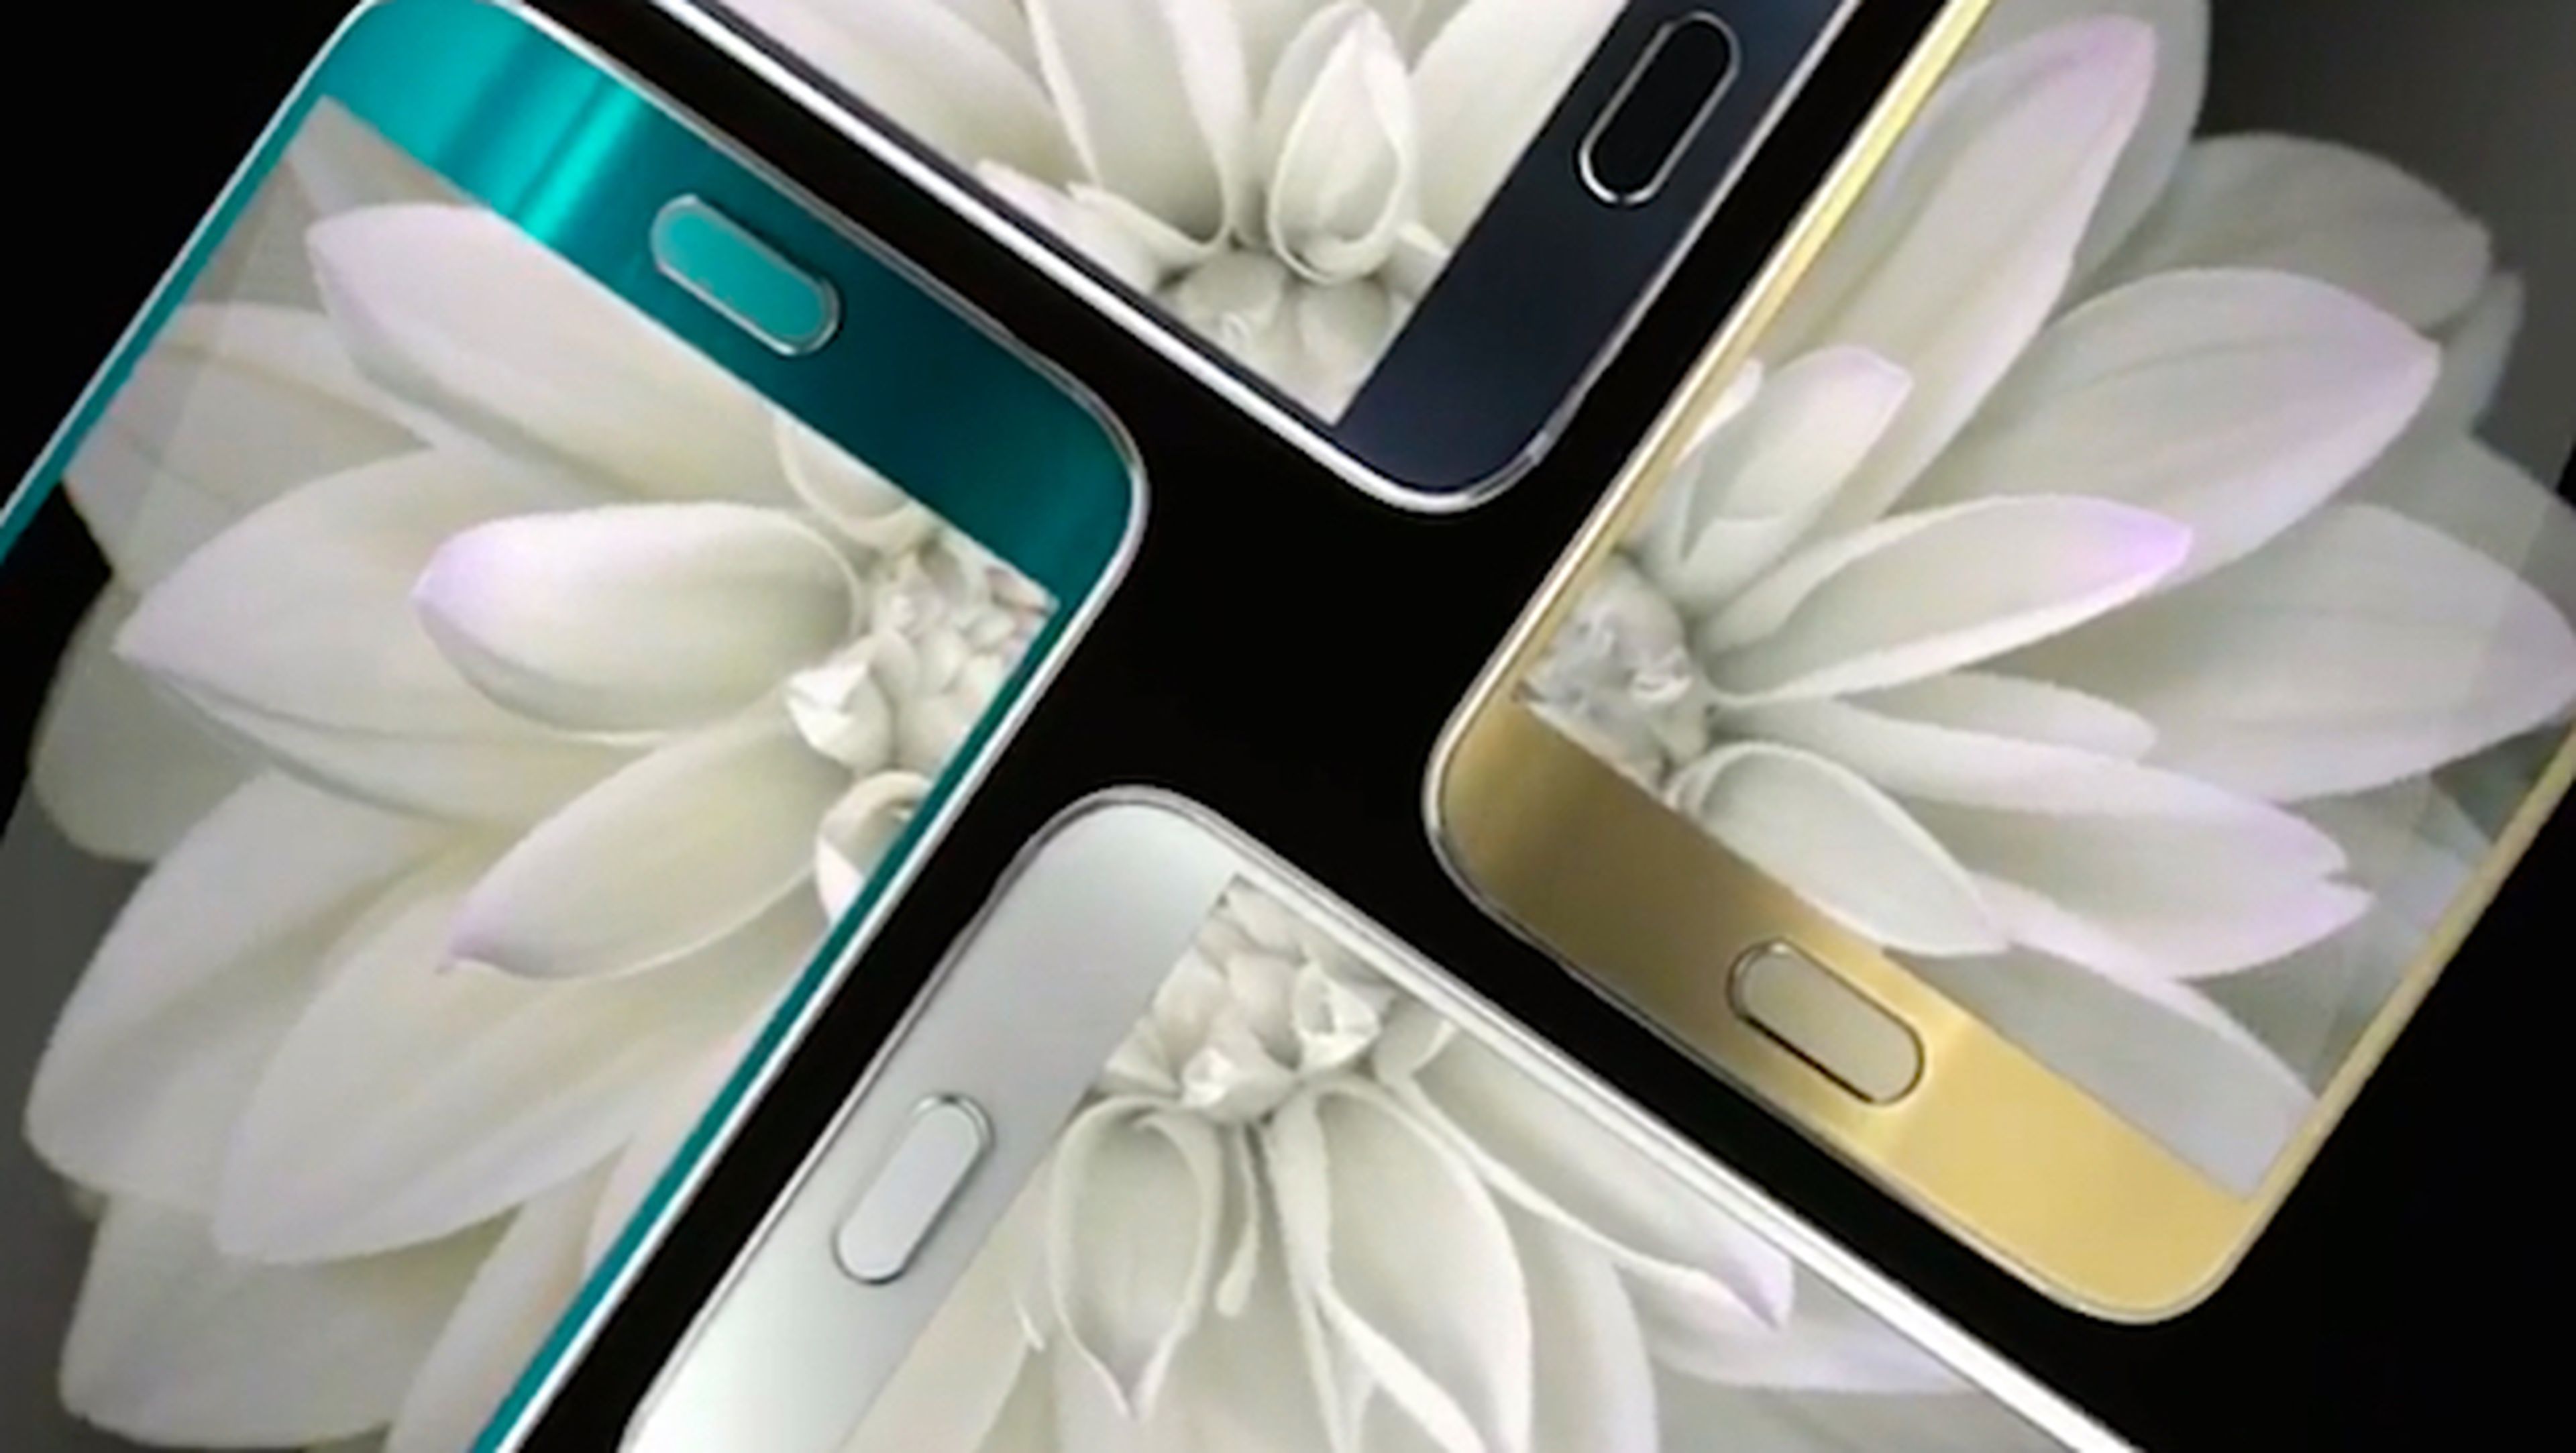 Precios de Samsung Galaxy S6 y S6 Edge confirmados en España